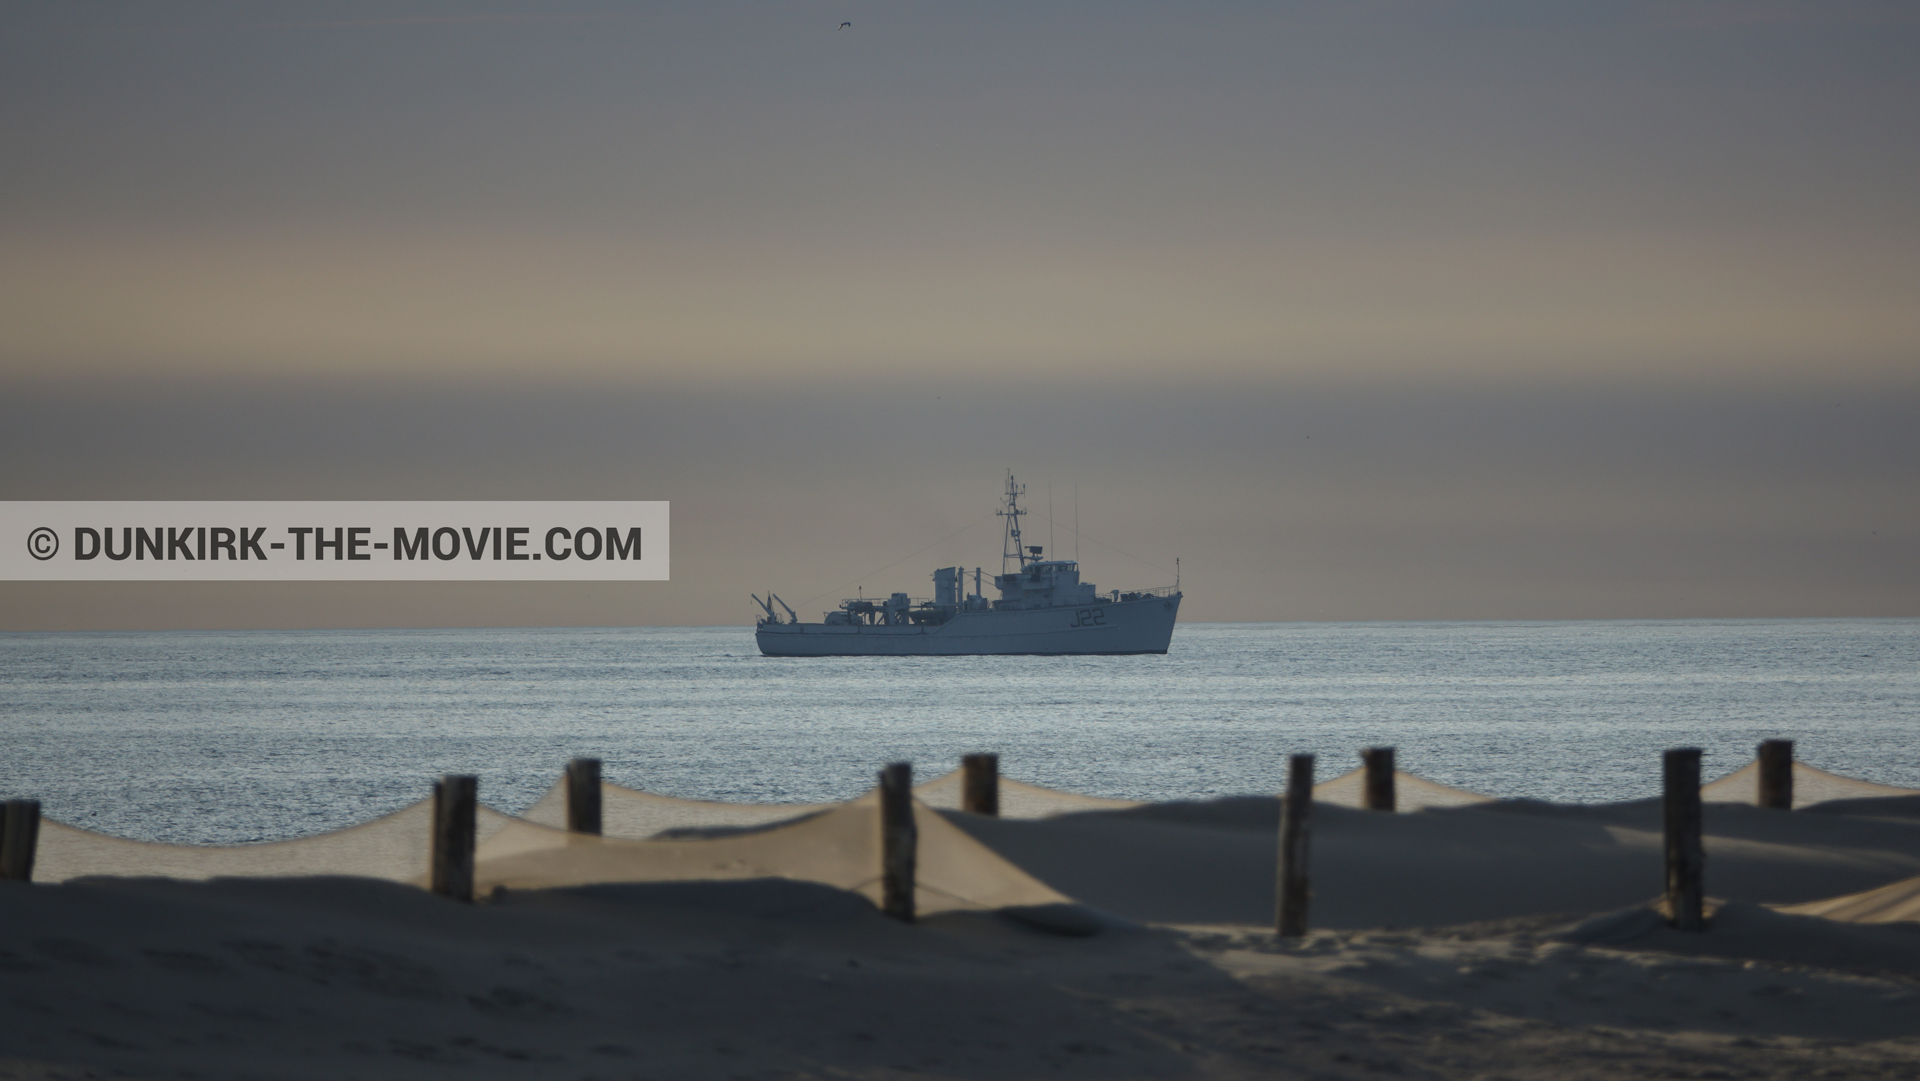 Photo avec ciel orangé, J22 -Hr.Ms. Naaldwijk, mer calme, plage,  des dessous du Film Dunkerque de Nolan